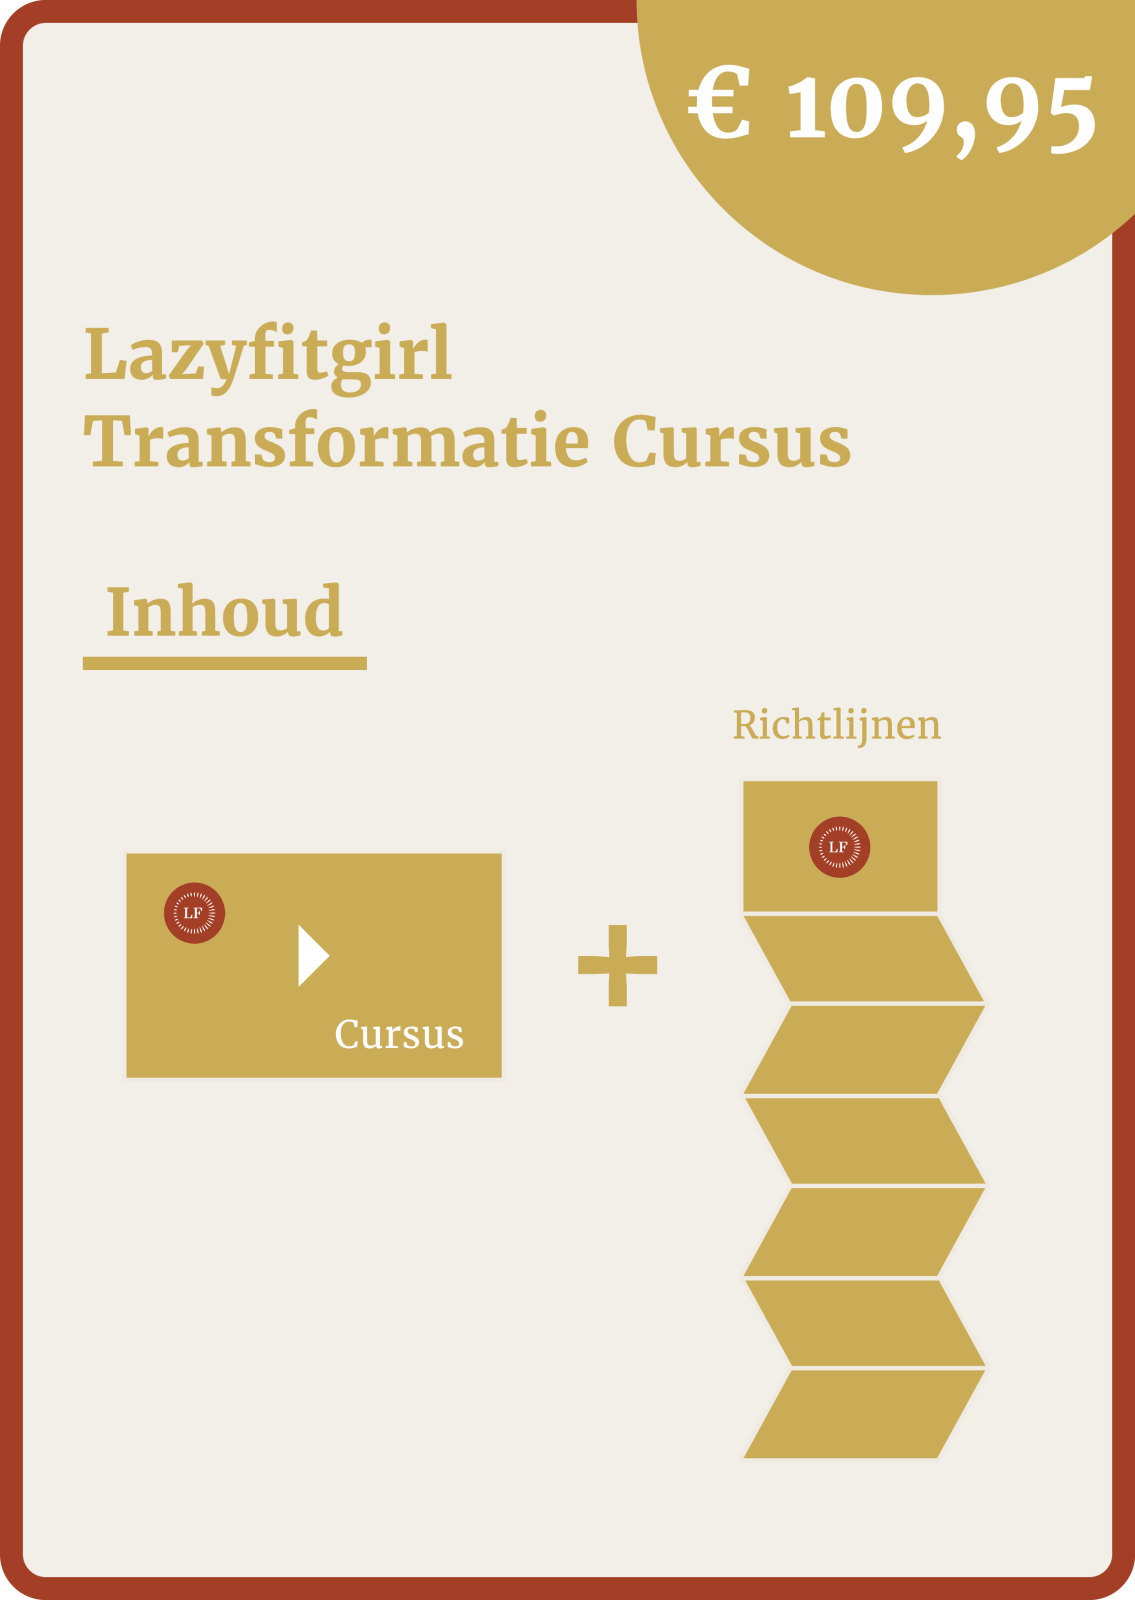 Lazyfitgirl Transformatie Cursus